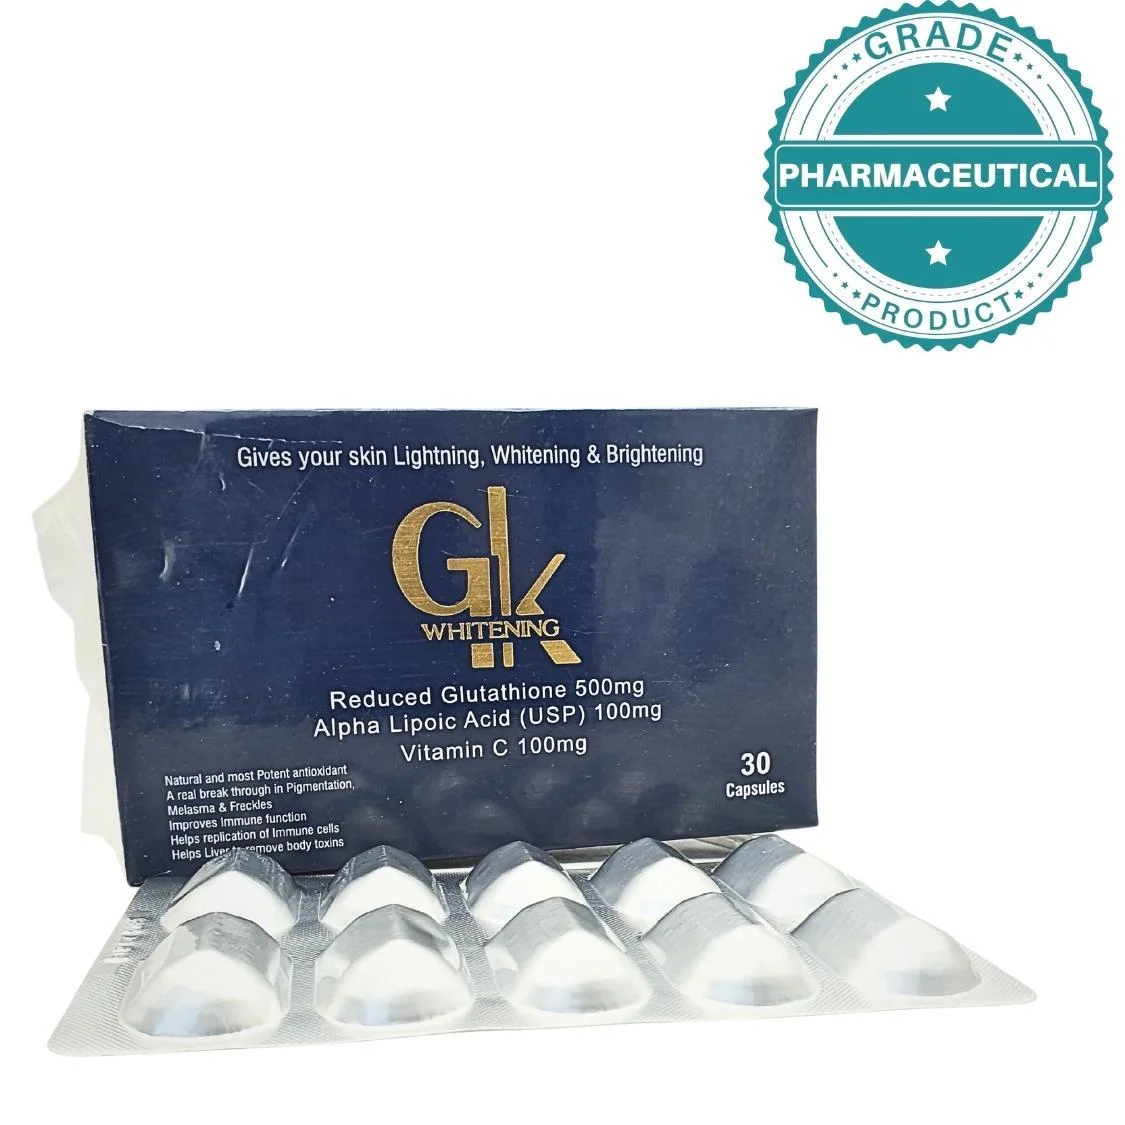 GK whitening capsules 